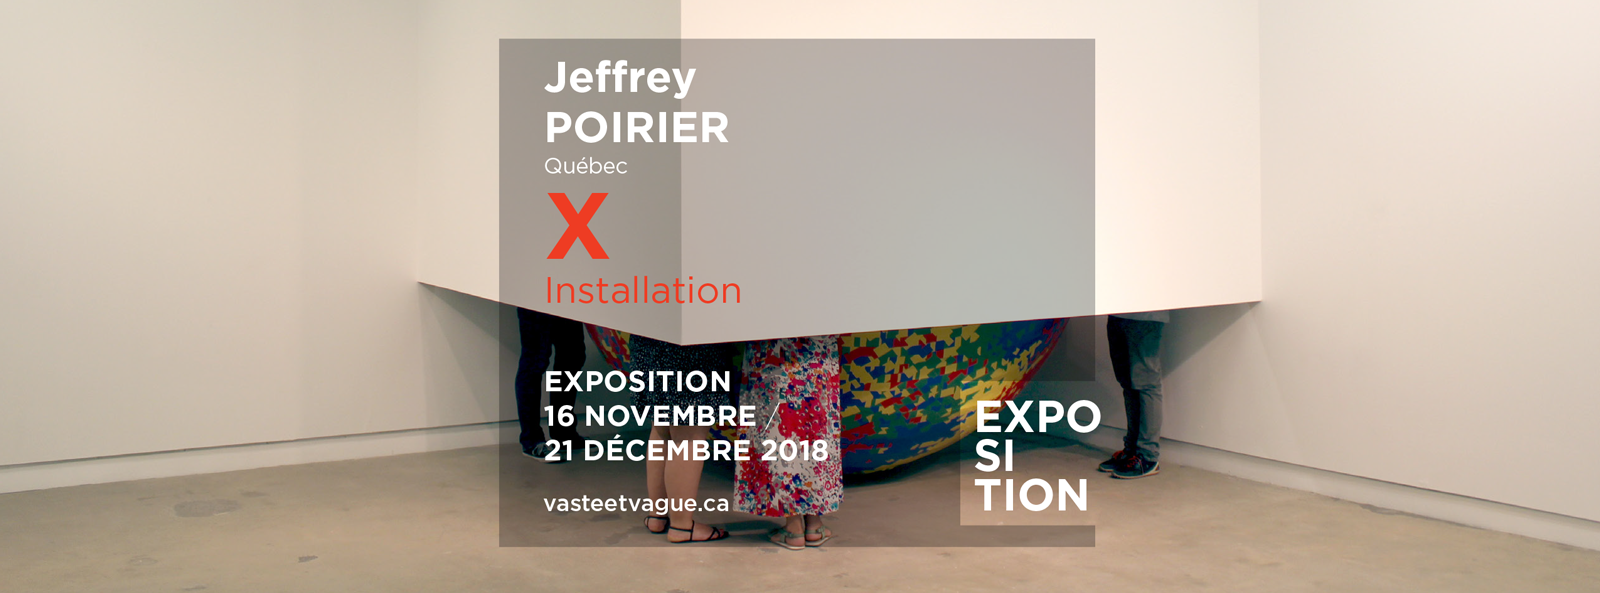 Jeffrey POIRIER, Québec | X | Installation | Centre d'artistes Vaste et Vague